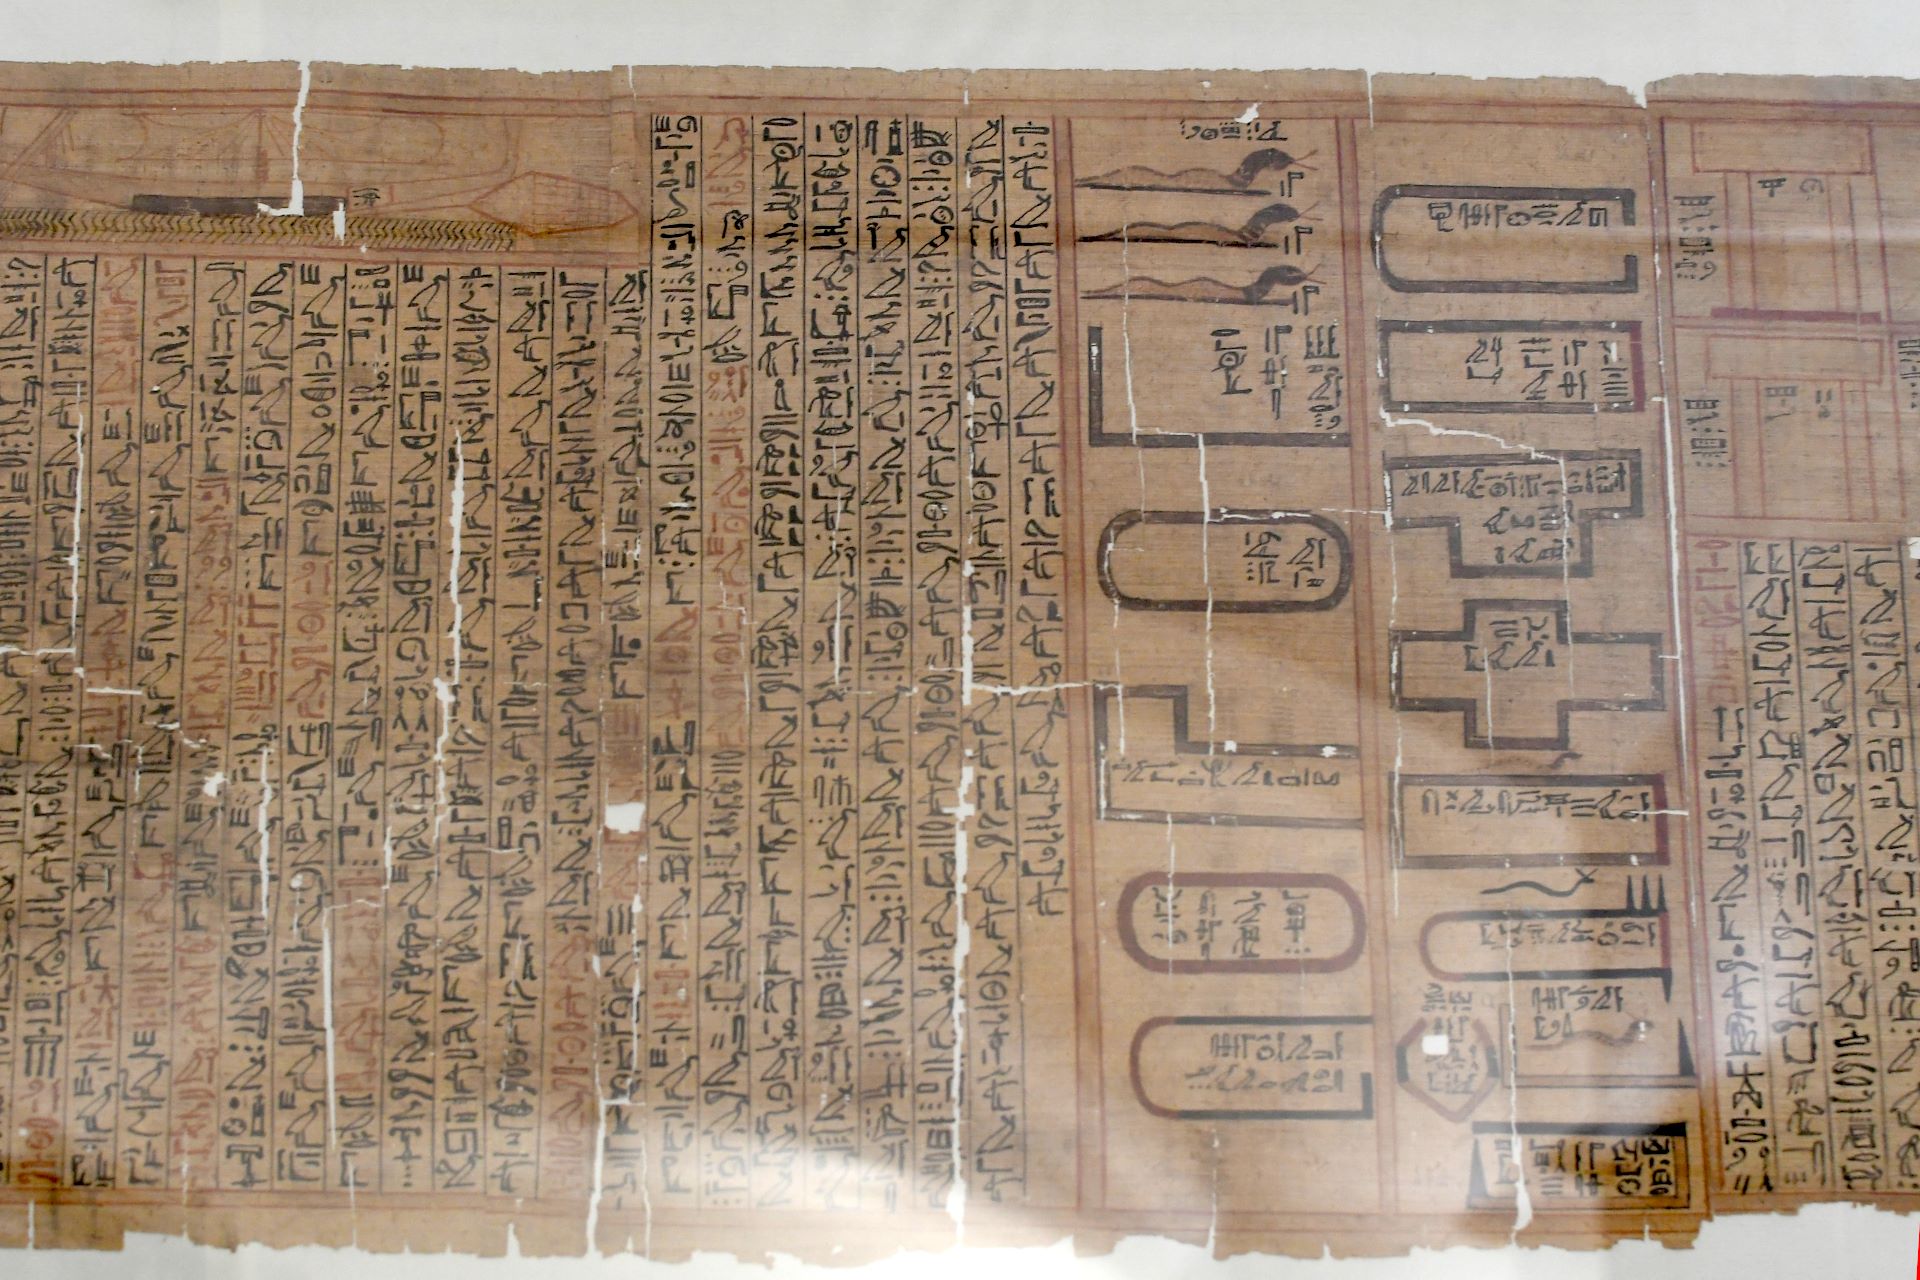 blog:2018-11-17-texte-aus-ferner-zeit:2018-11-17-wien-papyrusmuseum-051b.jpg